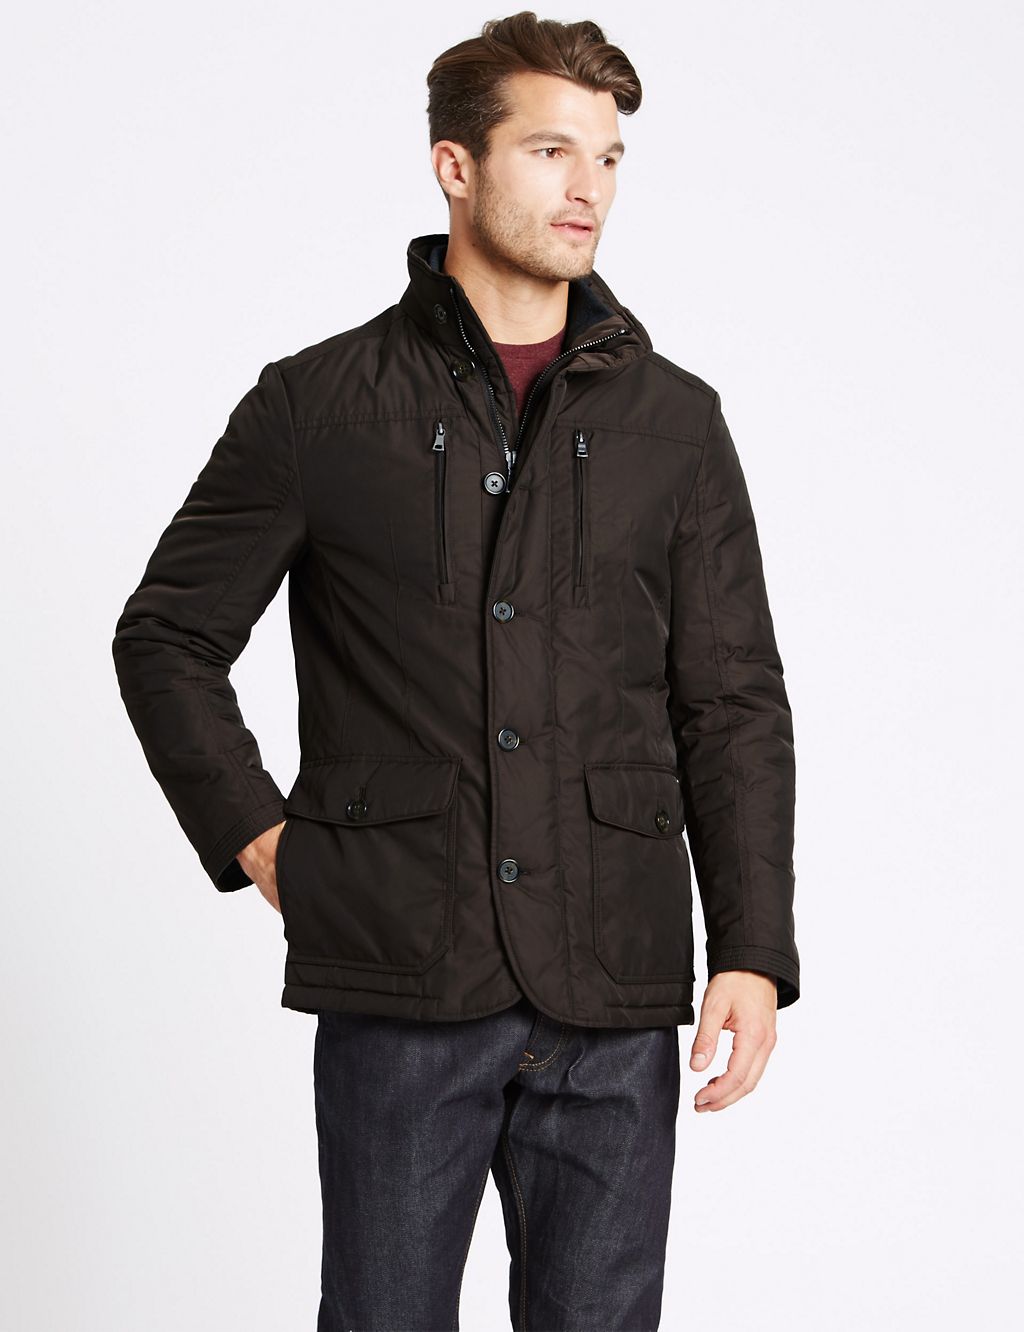 Jacket with Stormwear™ 3 of 6